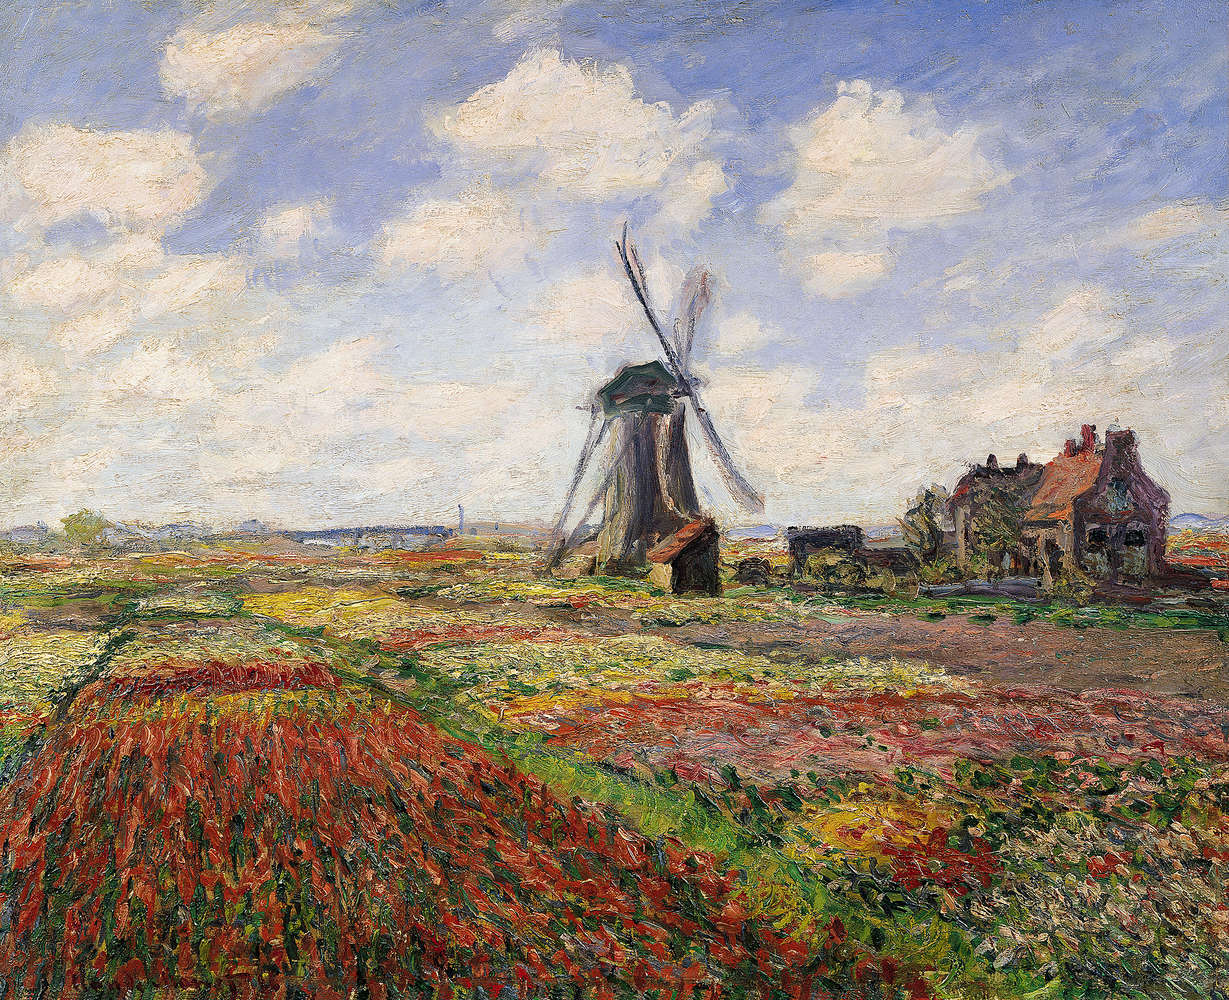             Fotomurali "Campi di tulipani con il mulino a vento di Rijnsburg" di Claude Monet
        